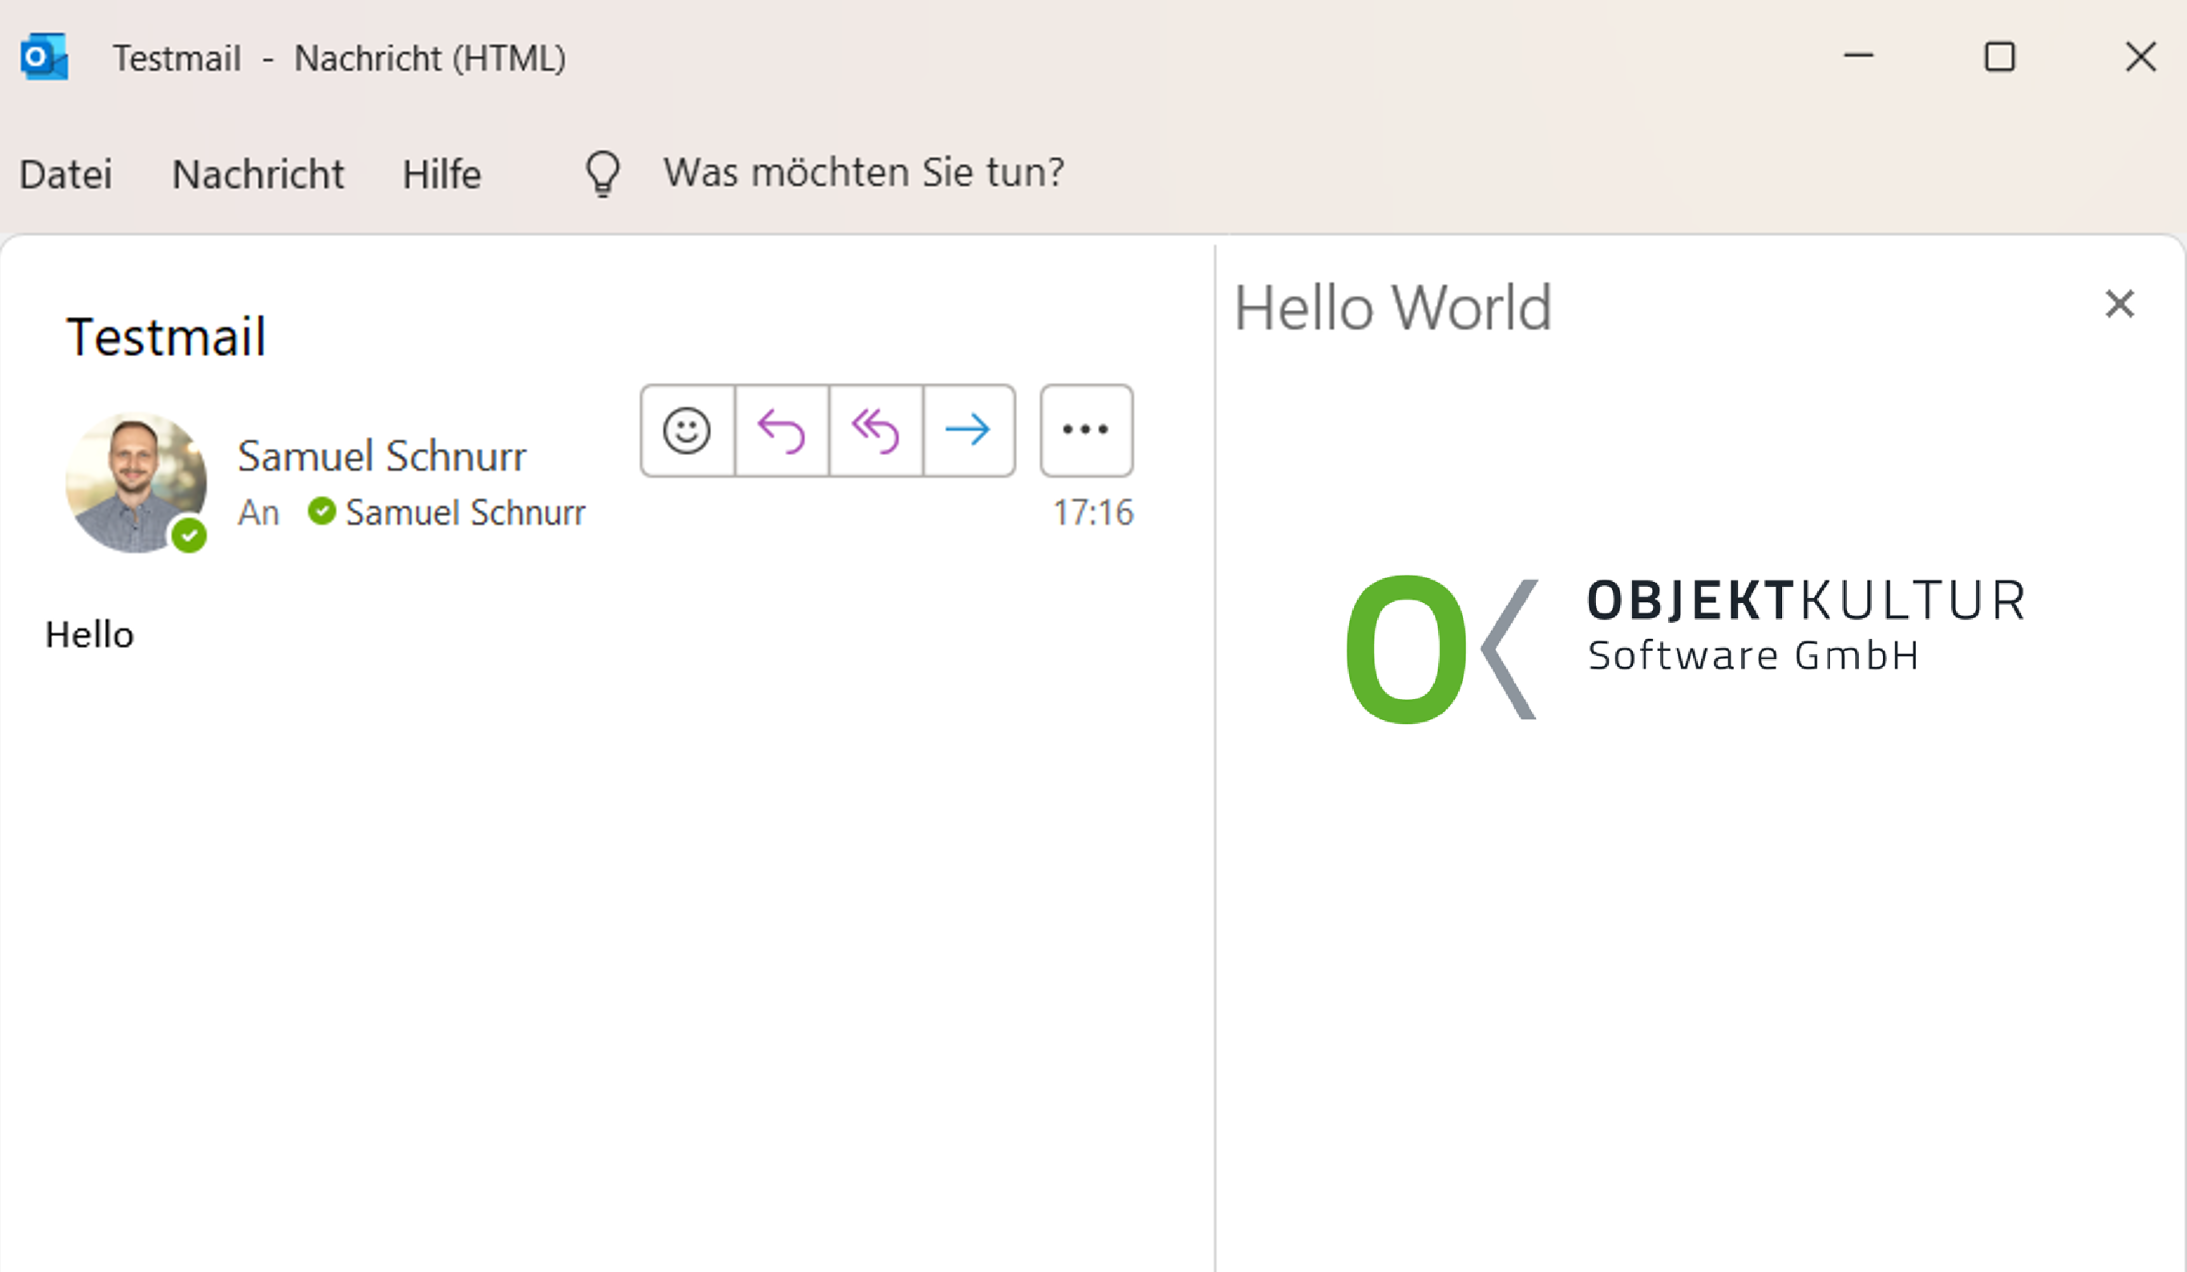 Ein Outlook Add-In der Hello World und das Logo von Objektkultur zeigt.